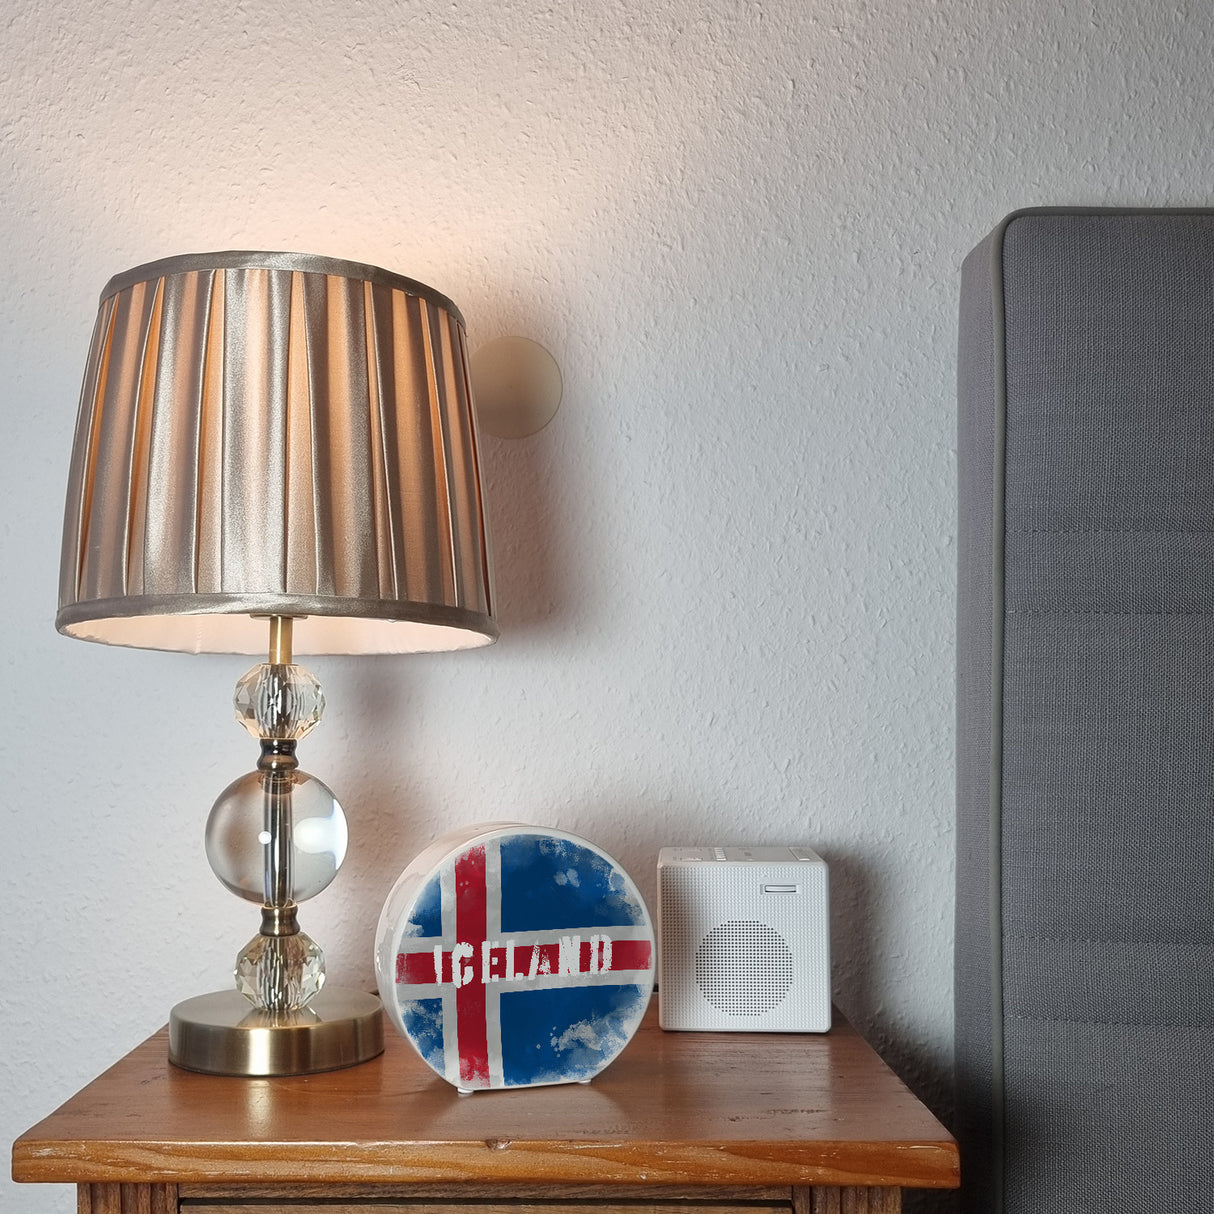 Spardose mit Island-Flagge im Used Look - Sparschwein für Urlauber